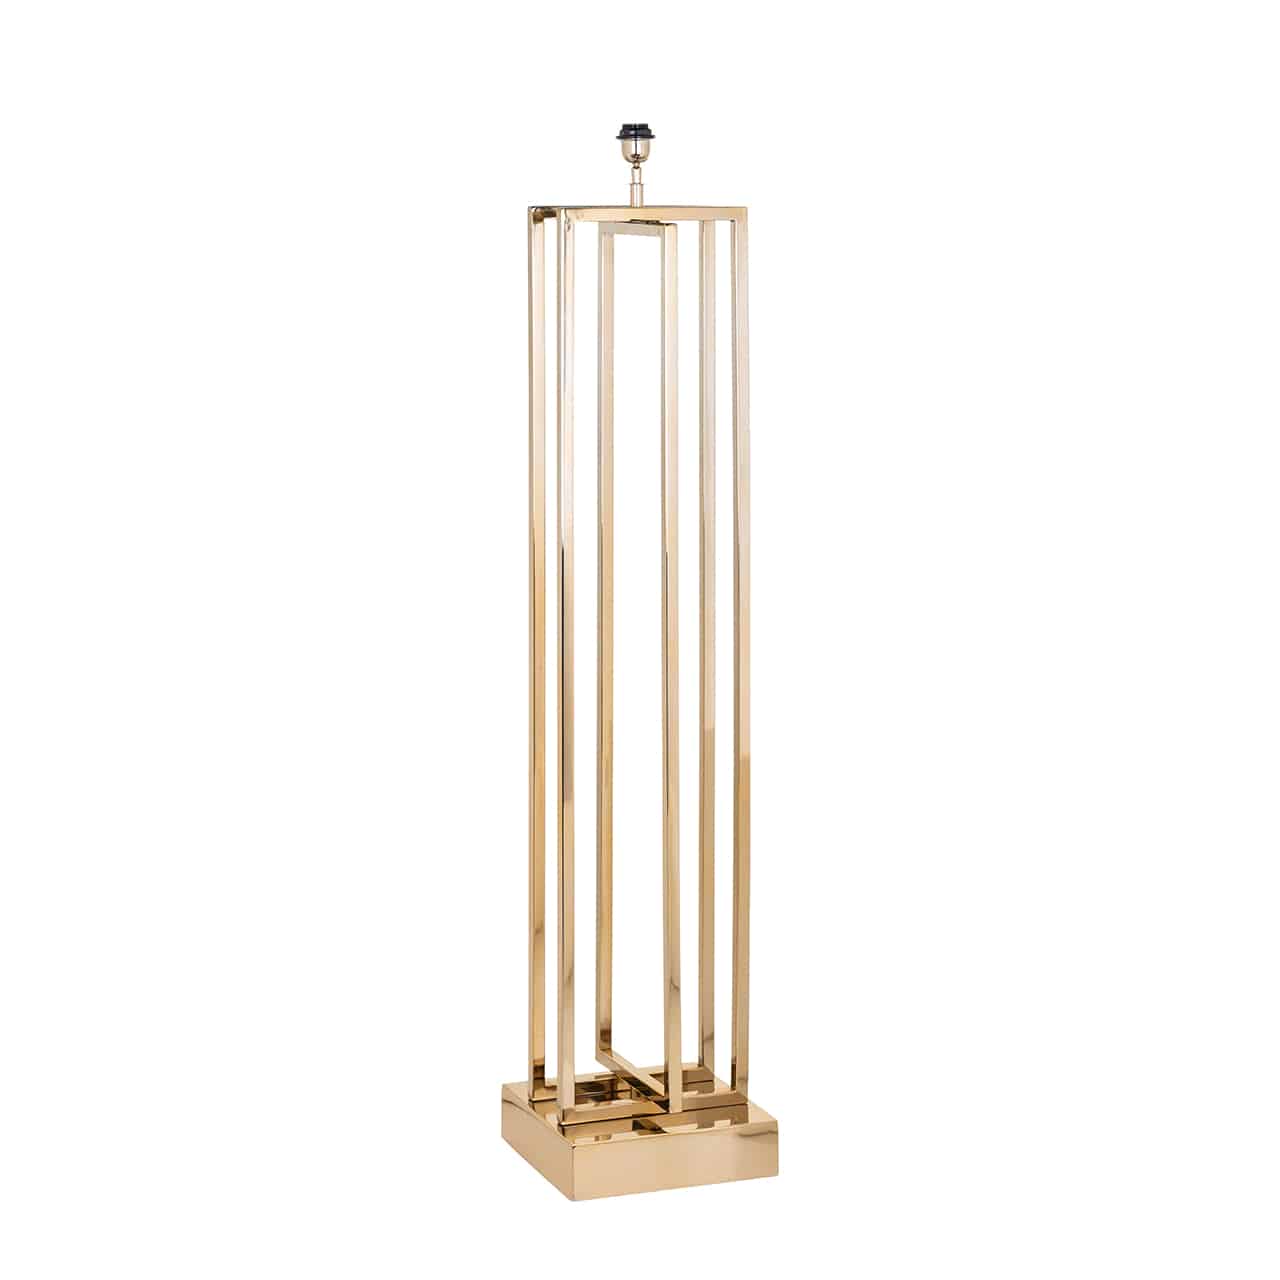 Stehlampe/Lampenfuß aus goldenem Edelstahl, bestehend aus einem quadratischem Sockel, darauf drei hohe, über Kreuz stehende Metallrahmen.